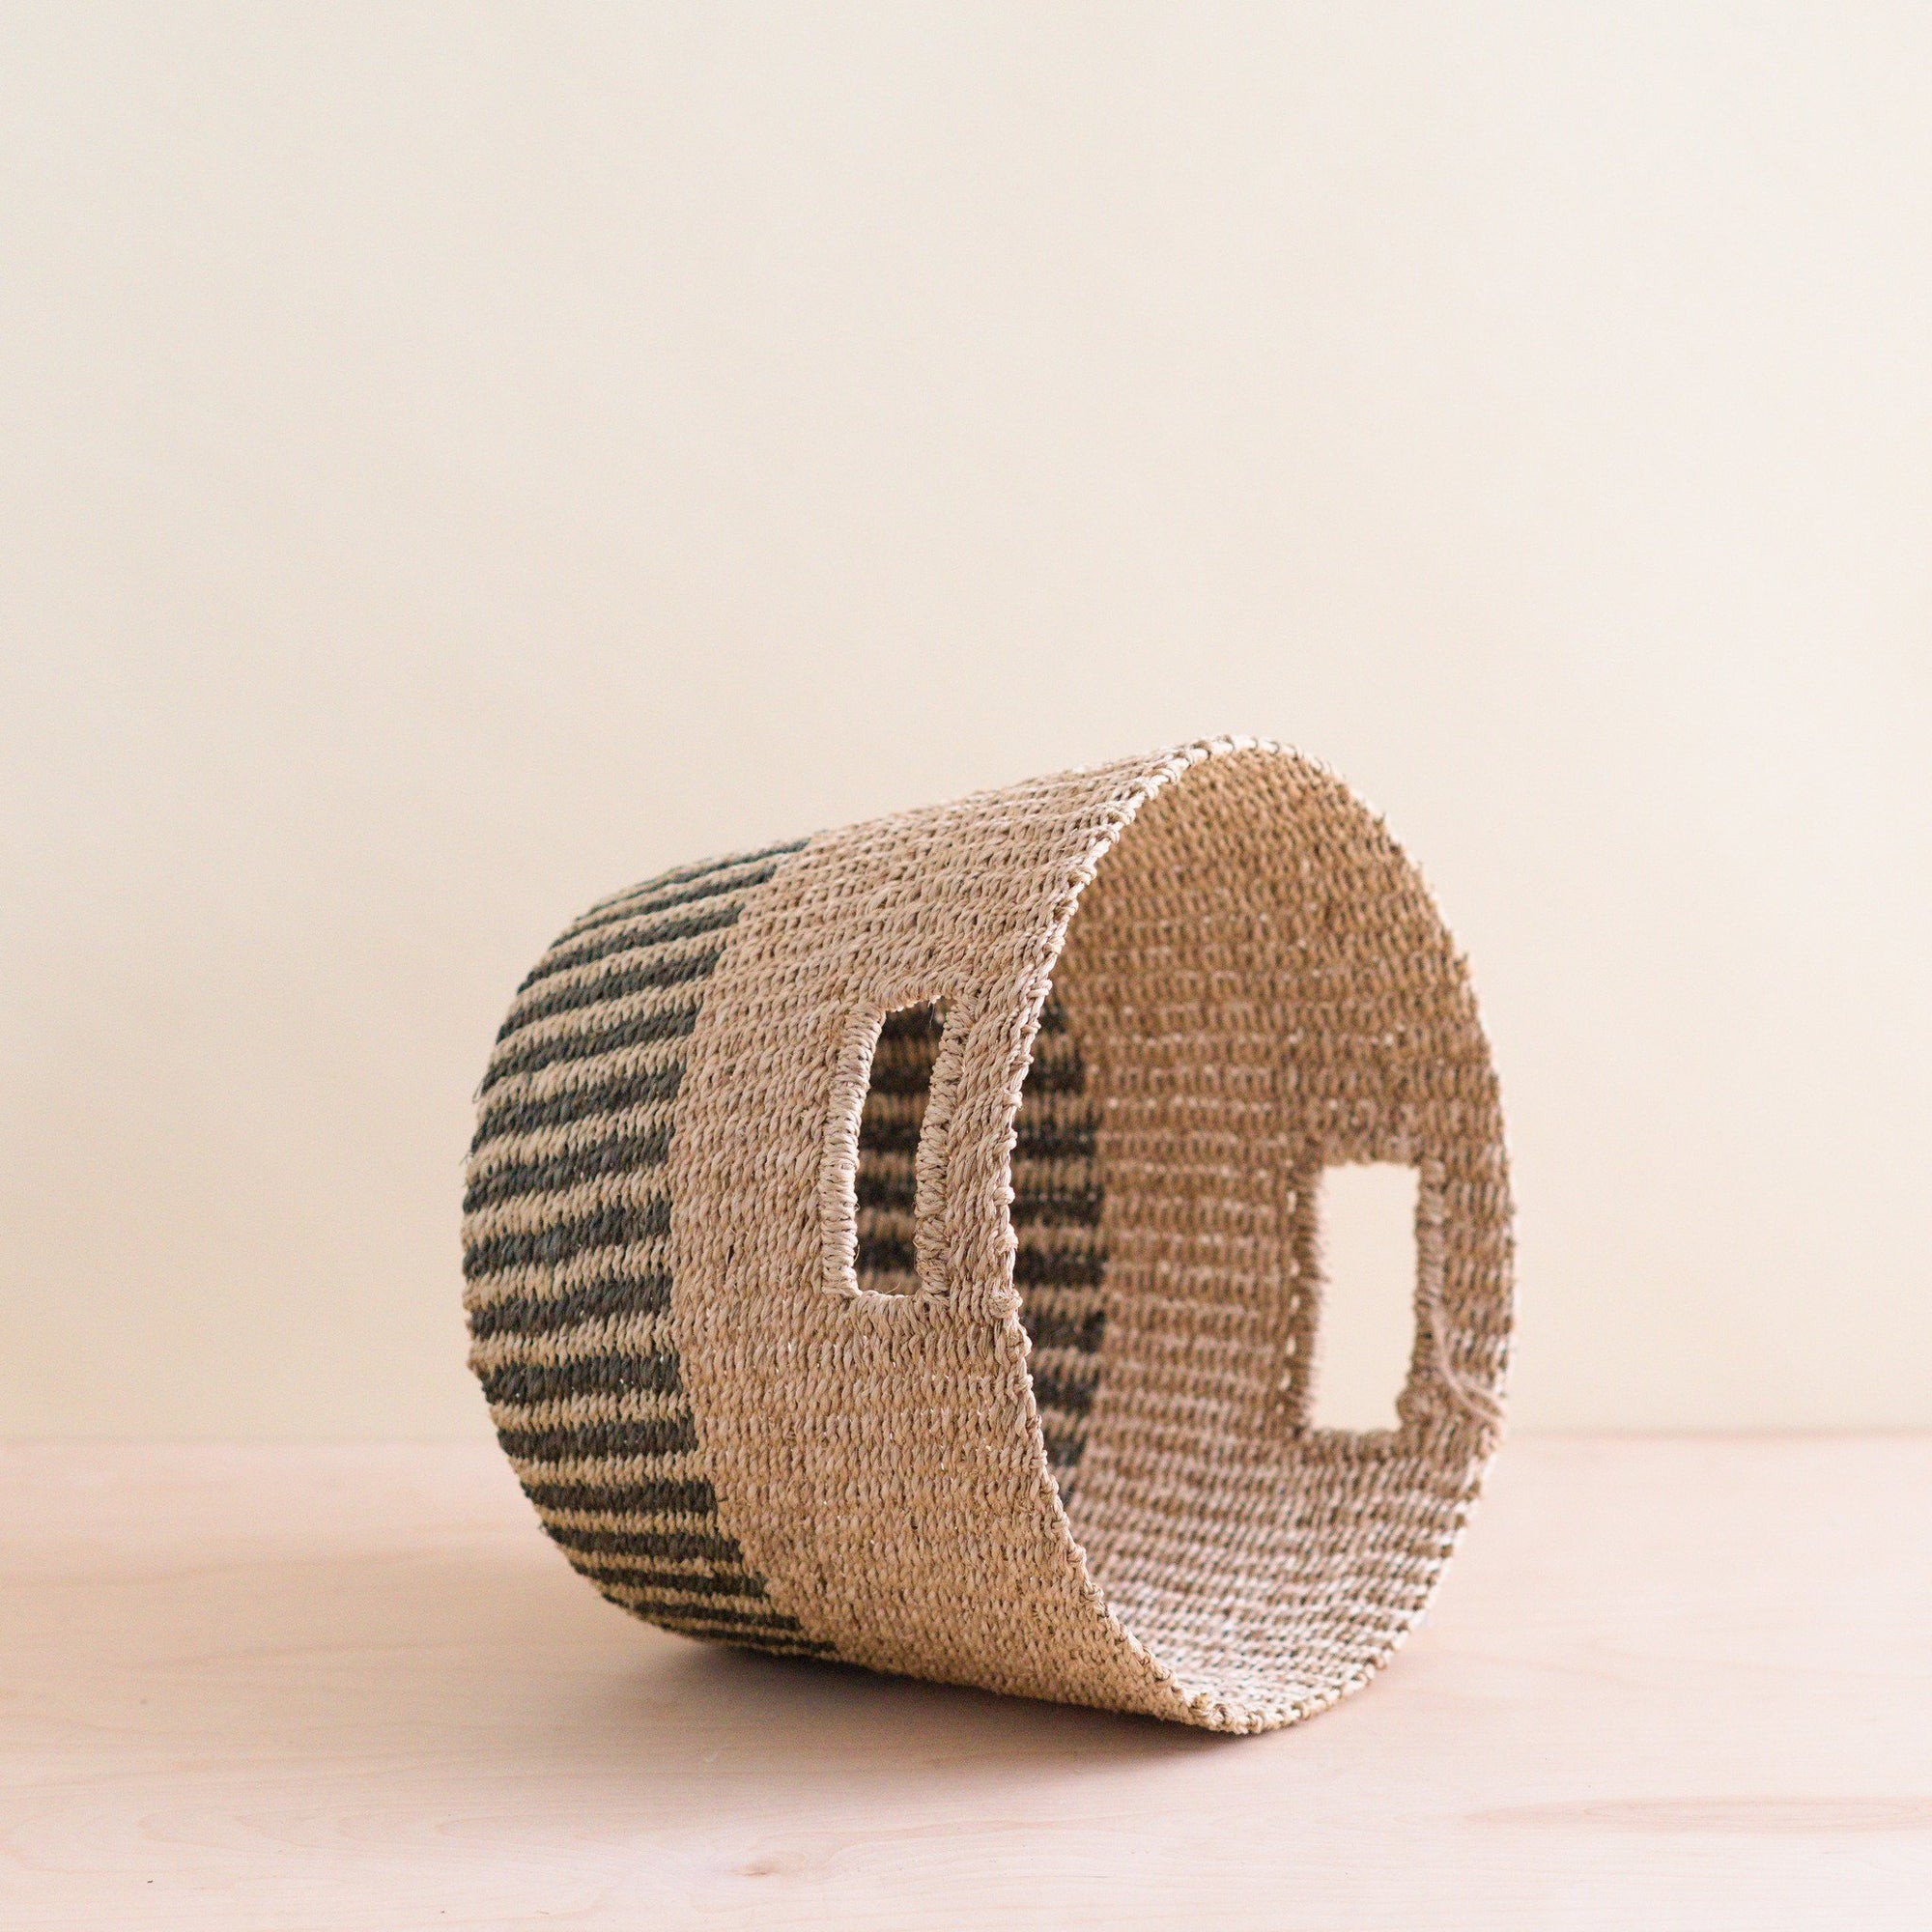 Baskets - Grey + Natural Tapered Basket - Storage Baskets | LIKHA - LIKHÂ